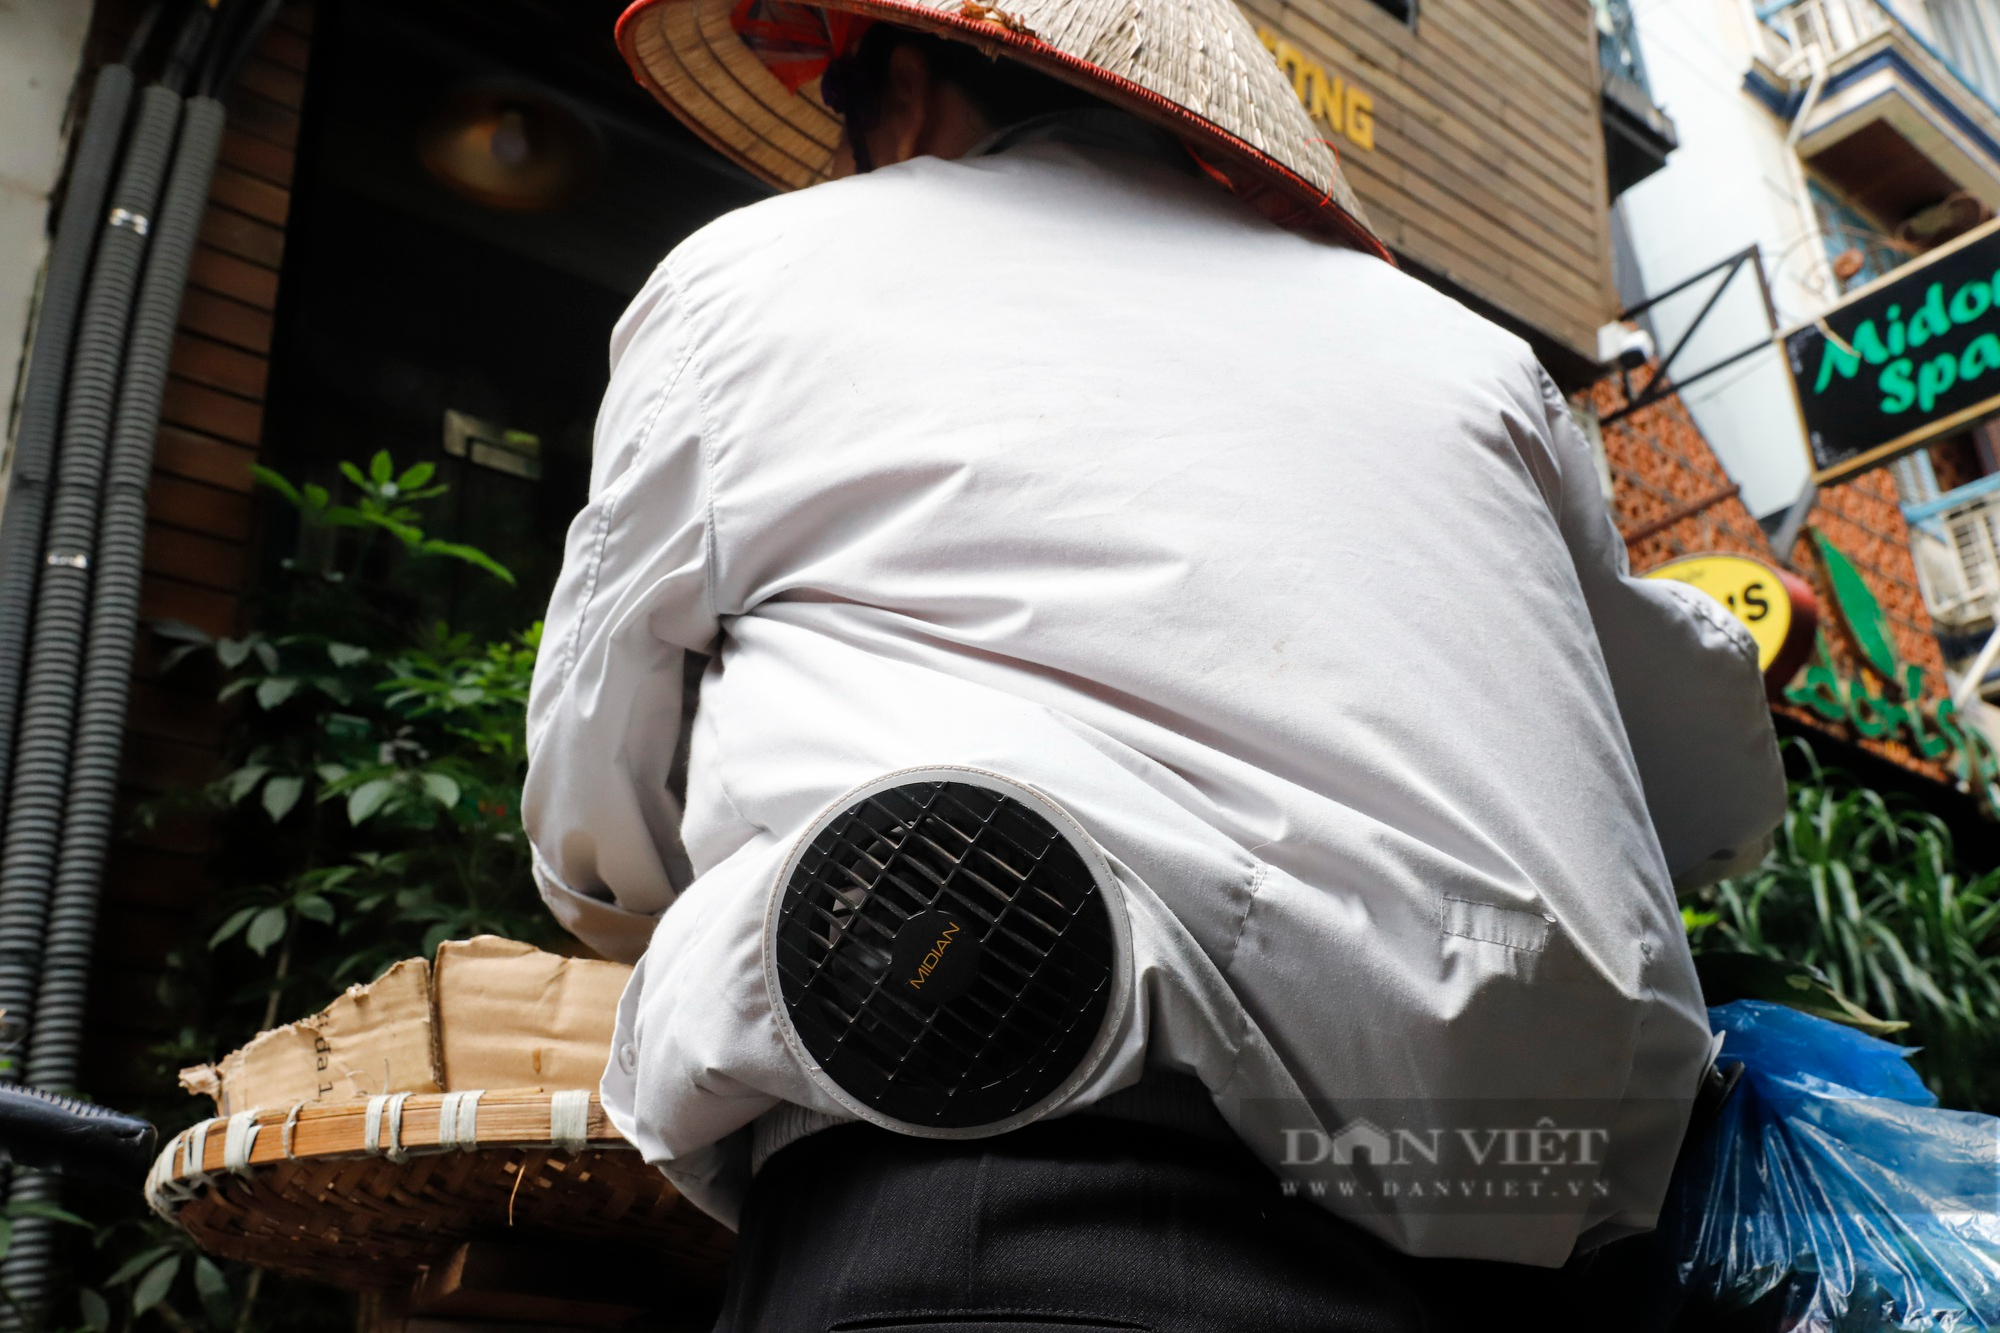 Muôn kiểu chống nắng nóng của người Hà Nội, xuất hiện áo điều hòa giá hơn 1 triệu đồng - Ảnh 8.